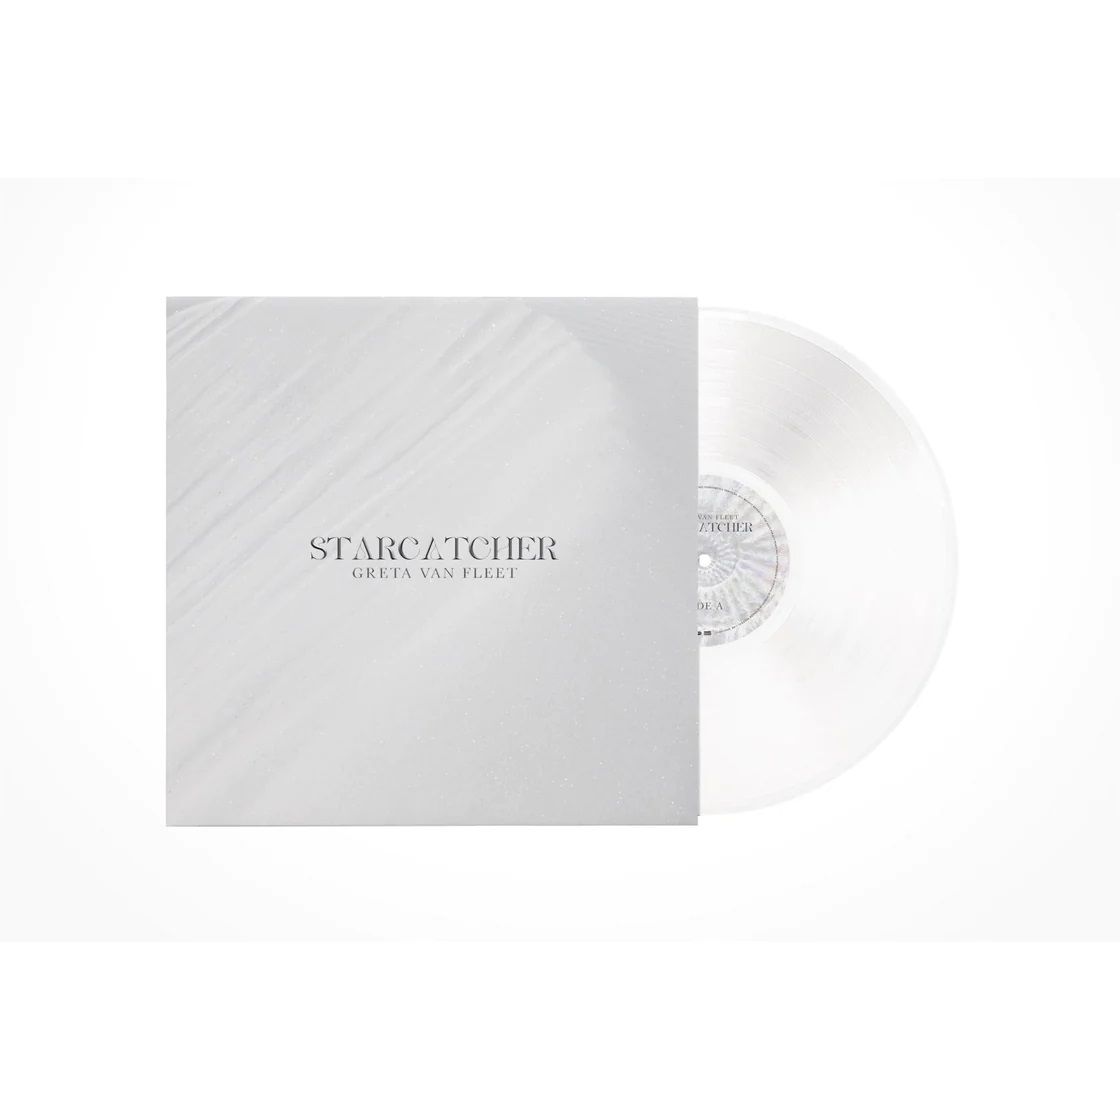 Greta Van Fleet - Starcatcher (Clear vinyl) - Vinyl - New